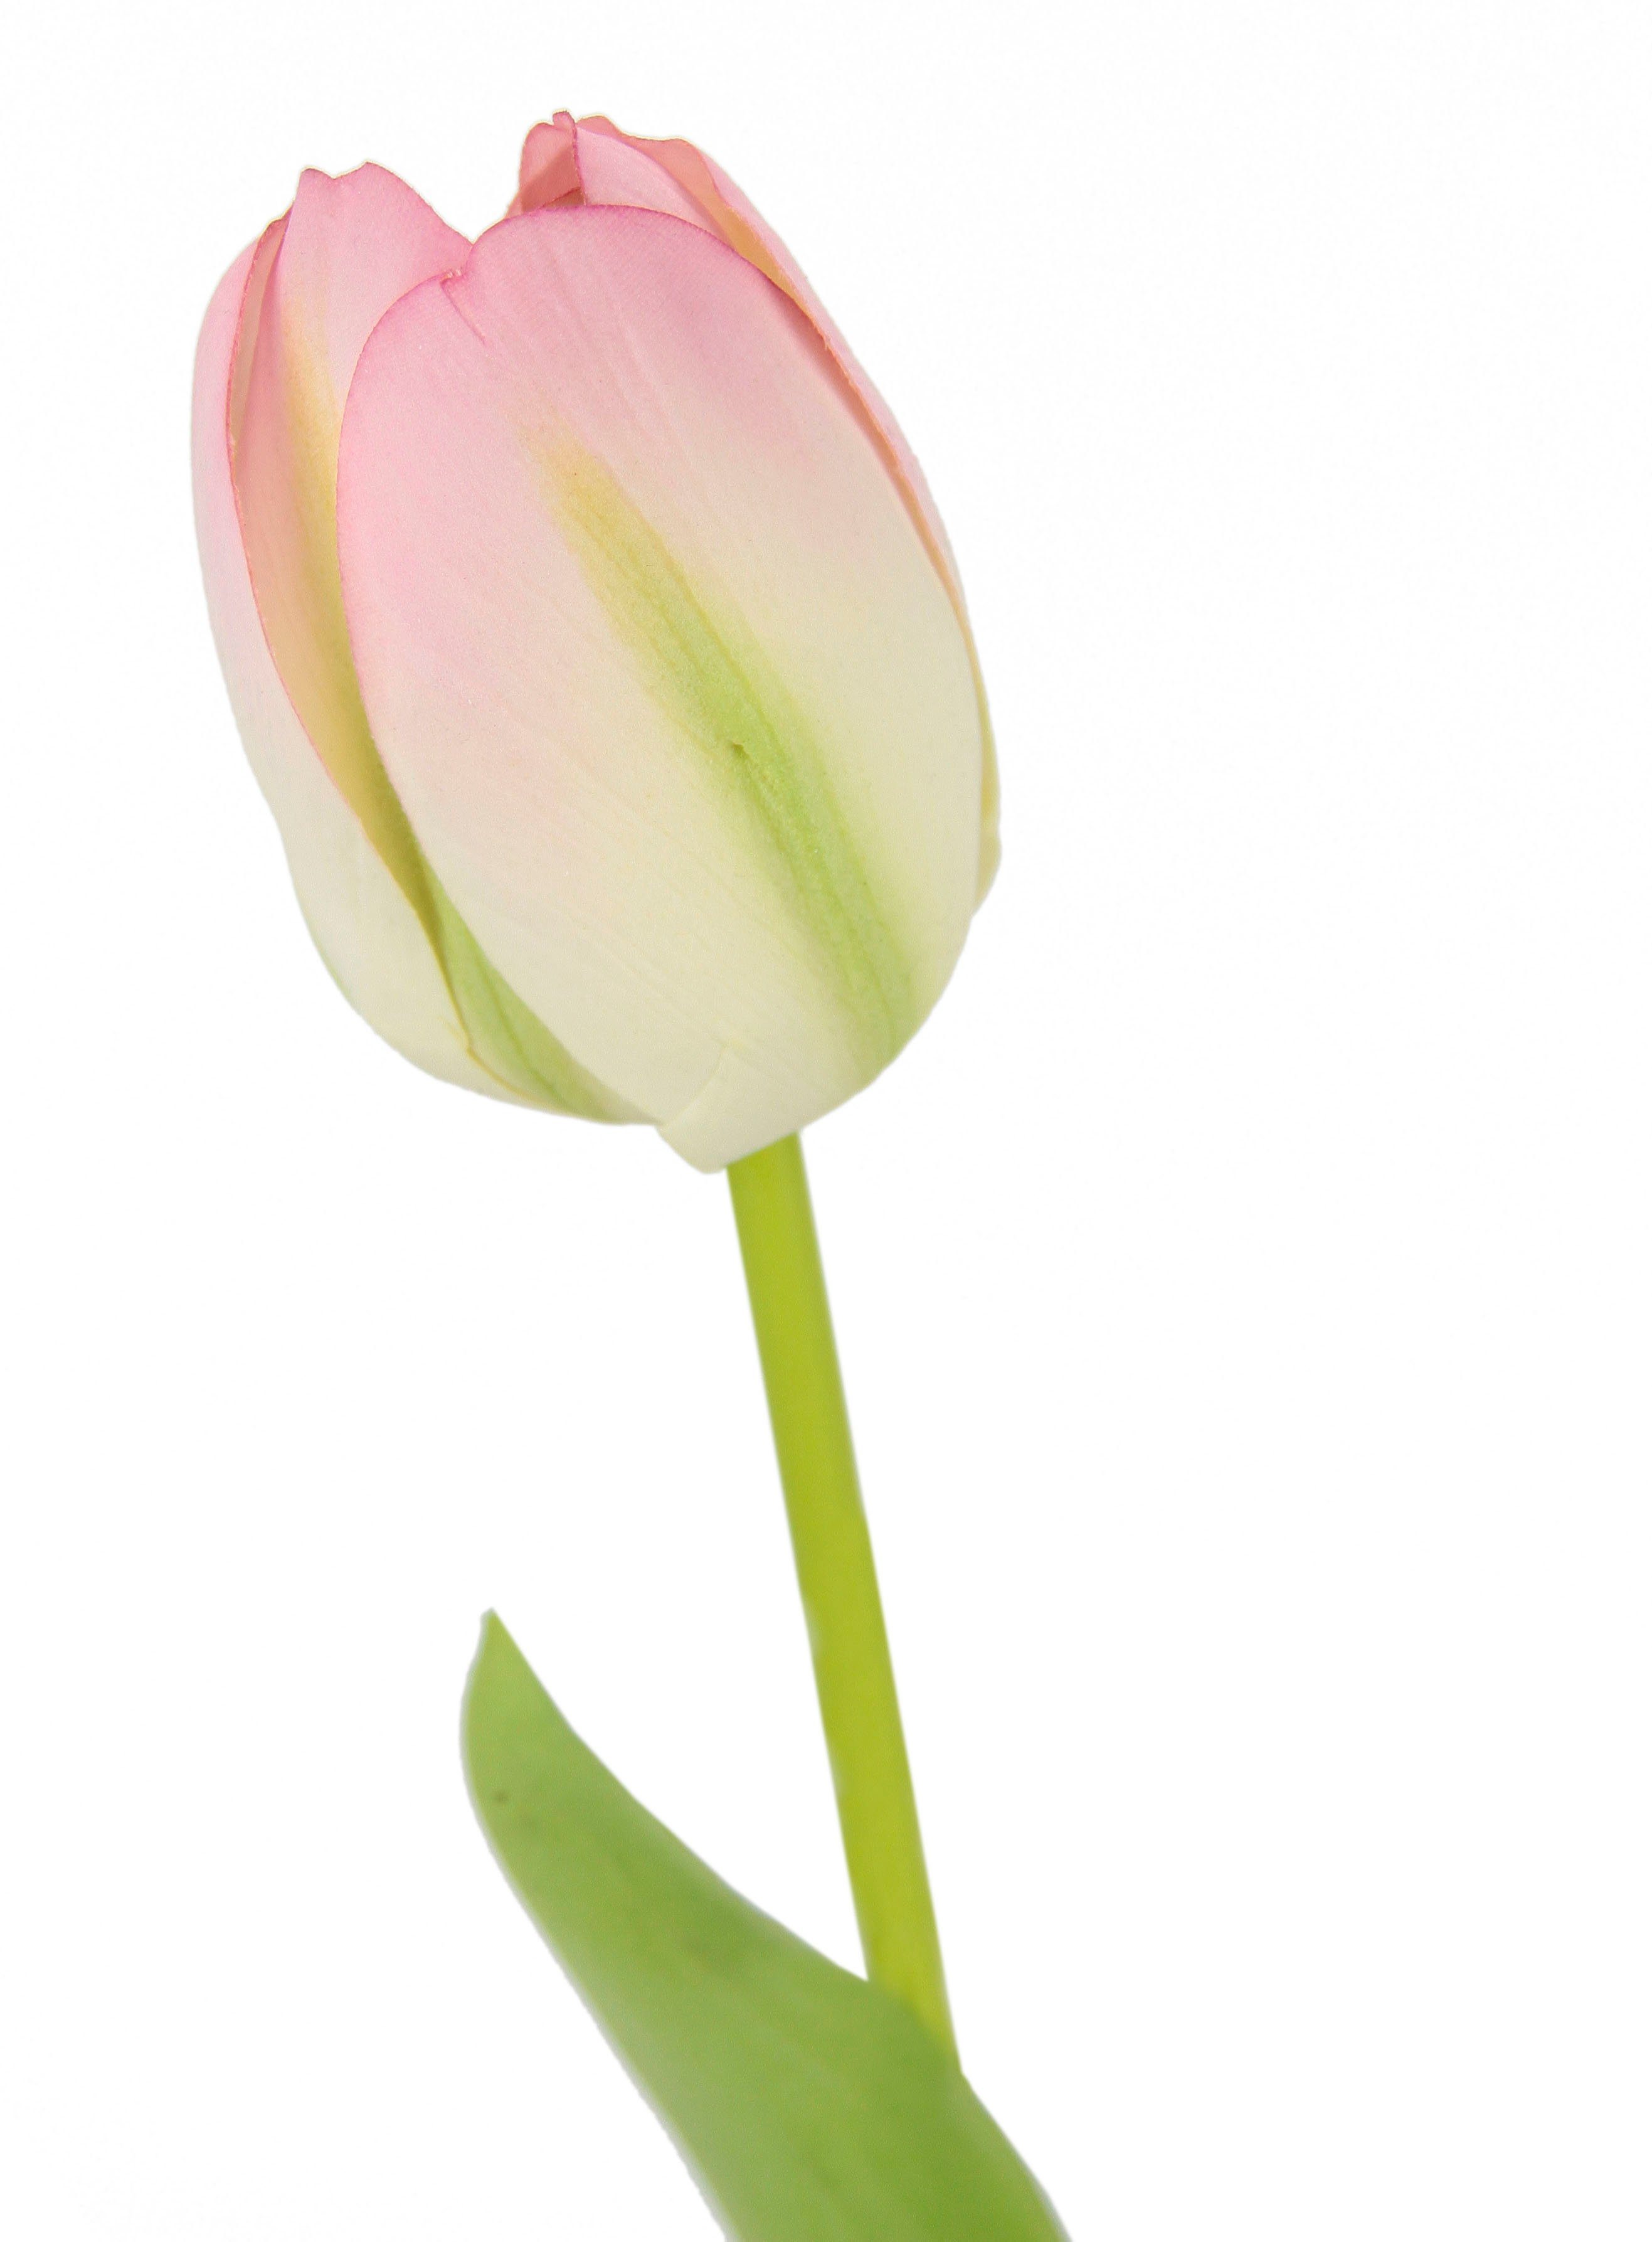 Set Höhe I.GE.A., künstliche 5er Stielblume Touch Tulpen, 67 Tulpenknospen, cm, Kunstblumen, Kunstblume weiß/rosa Real